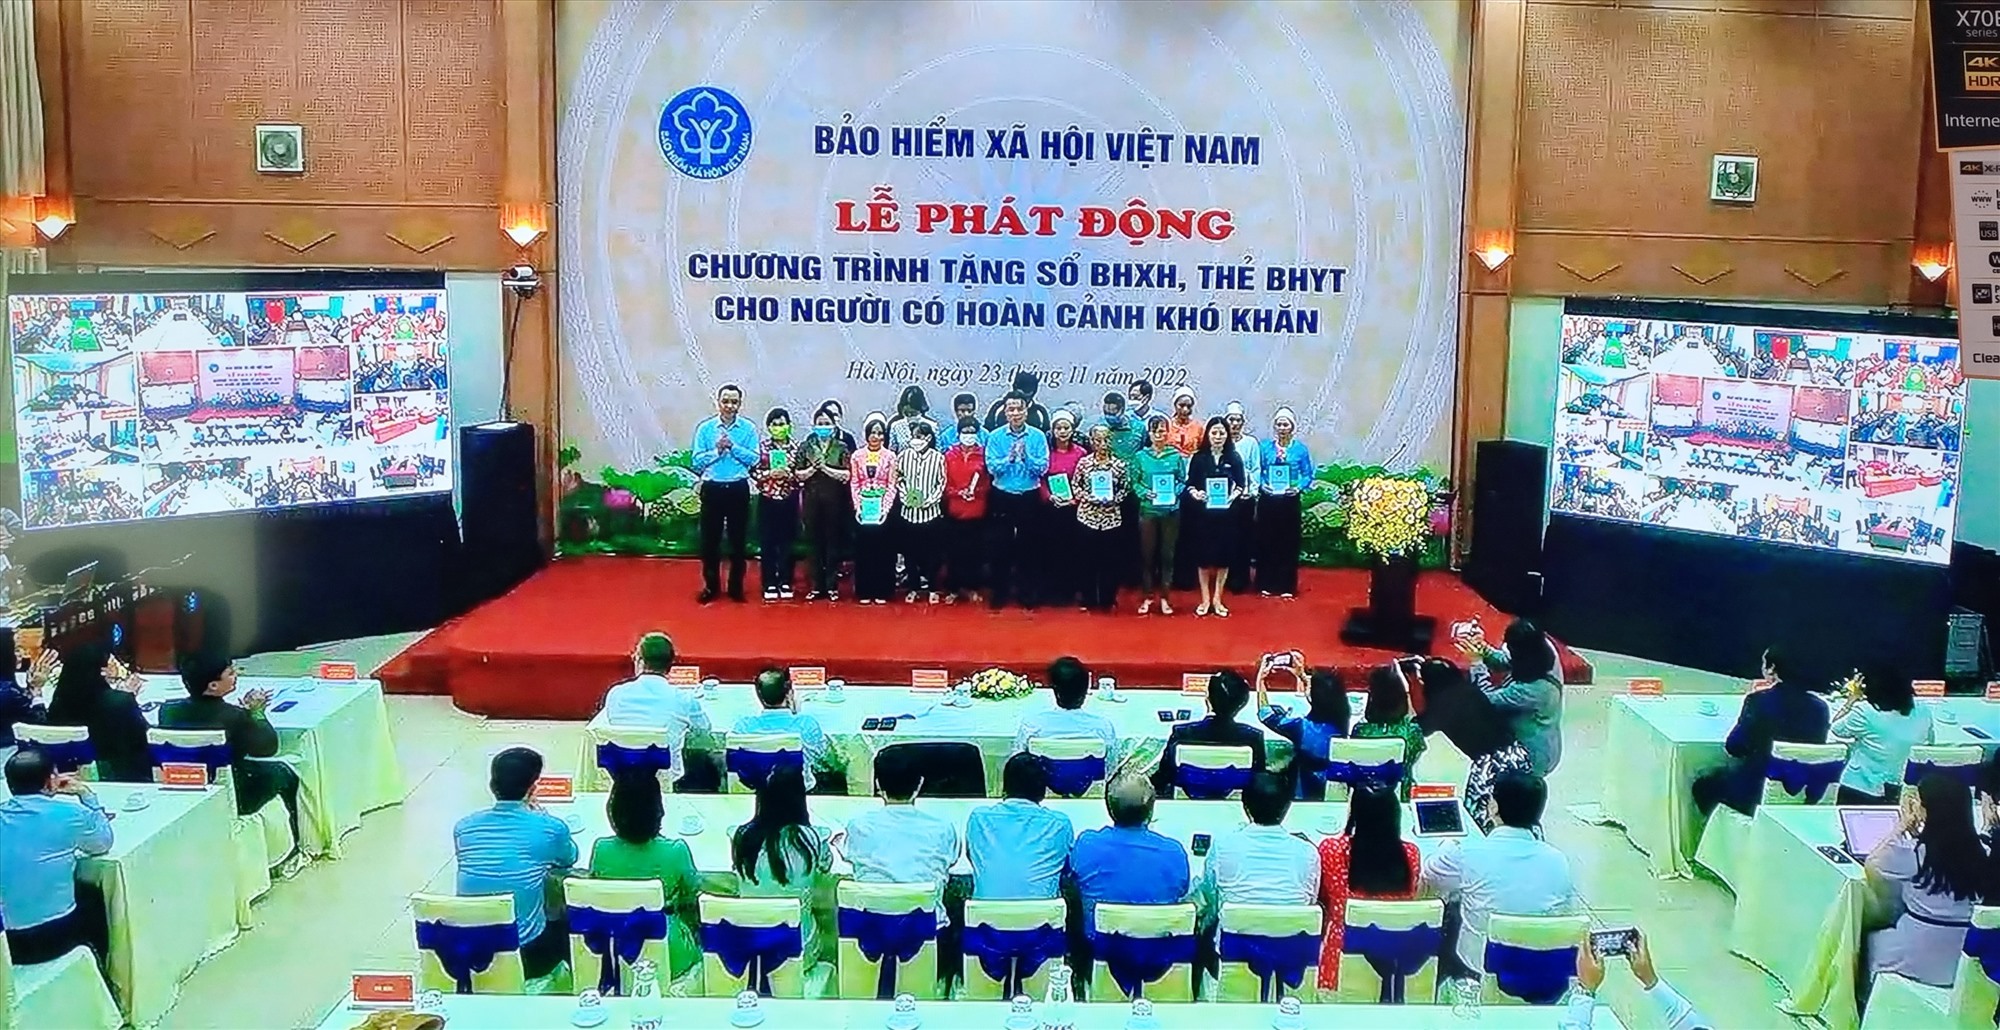 Tổng Giám đốc BHXH Việt Nam Nguyễn Thế Mạnh trao sổ BHXH, thẻ BHYT cho người có hoàn cảnh khó khăn - Ảnh: KS